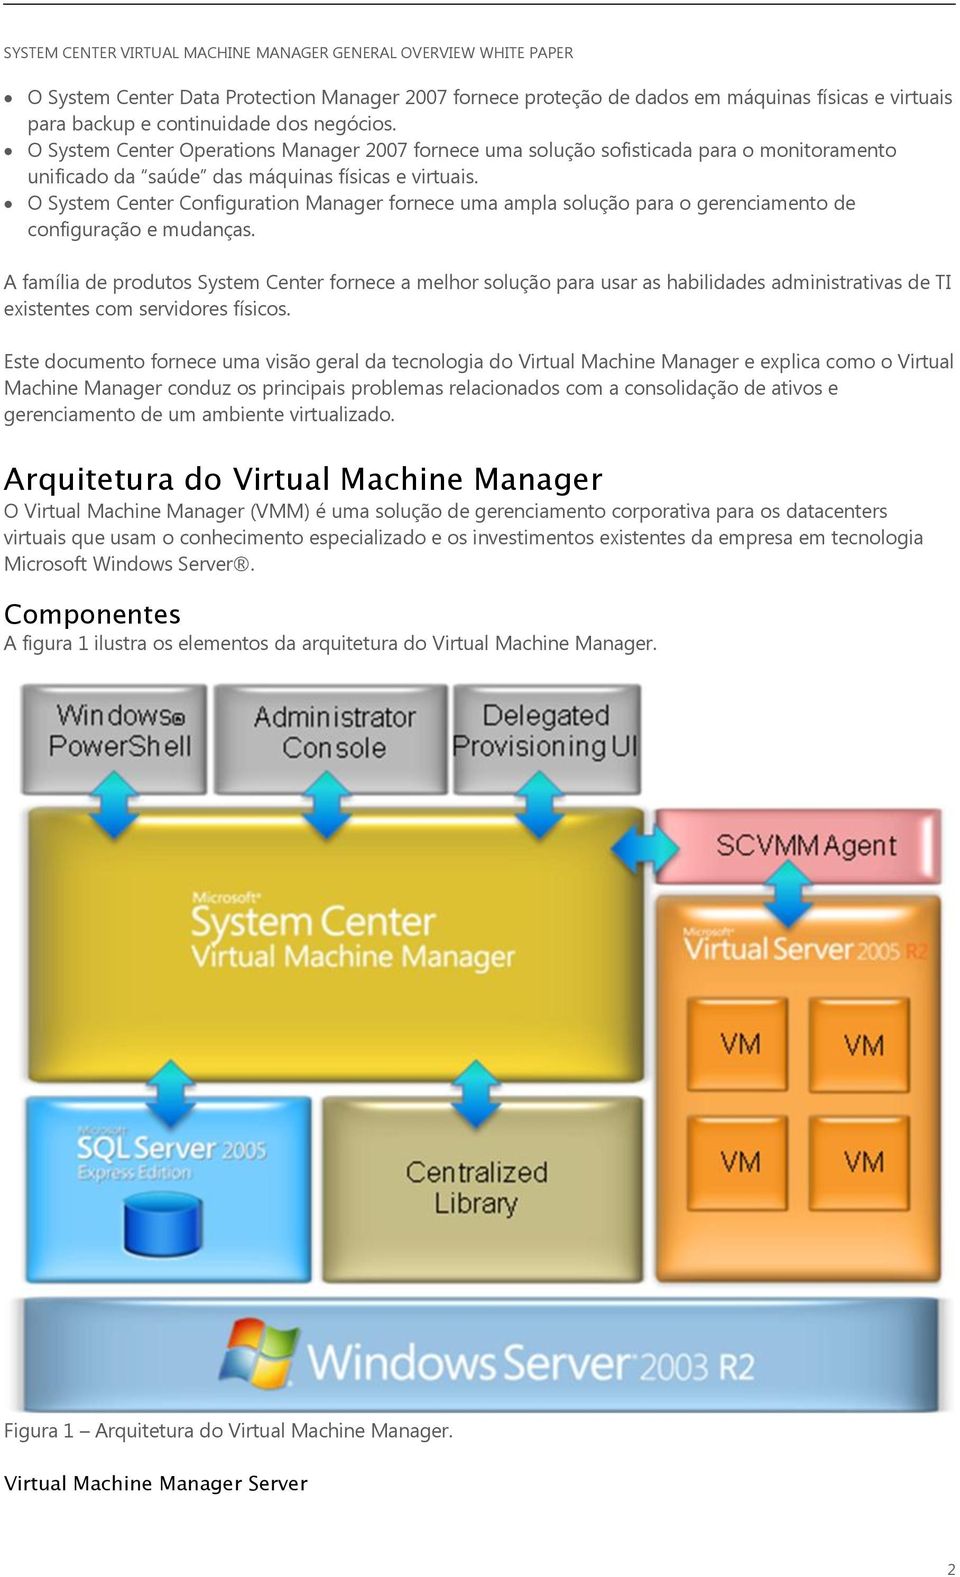 O System Center Configuration Manager fornece uma ampla solução para o gerenciamento de configuração e mudanças.